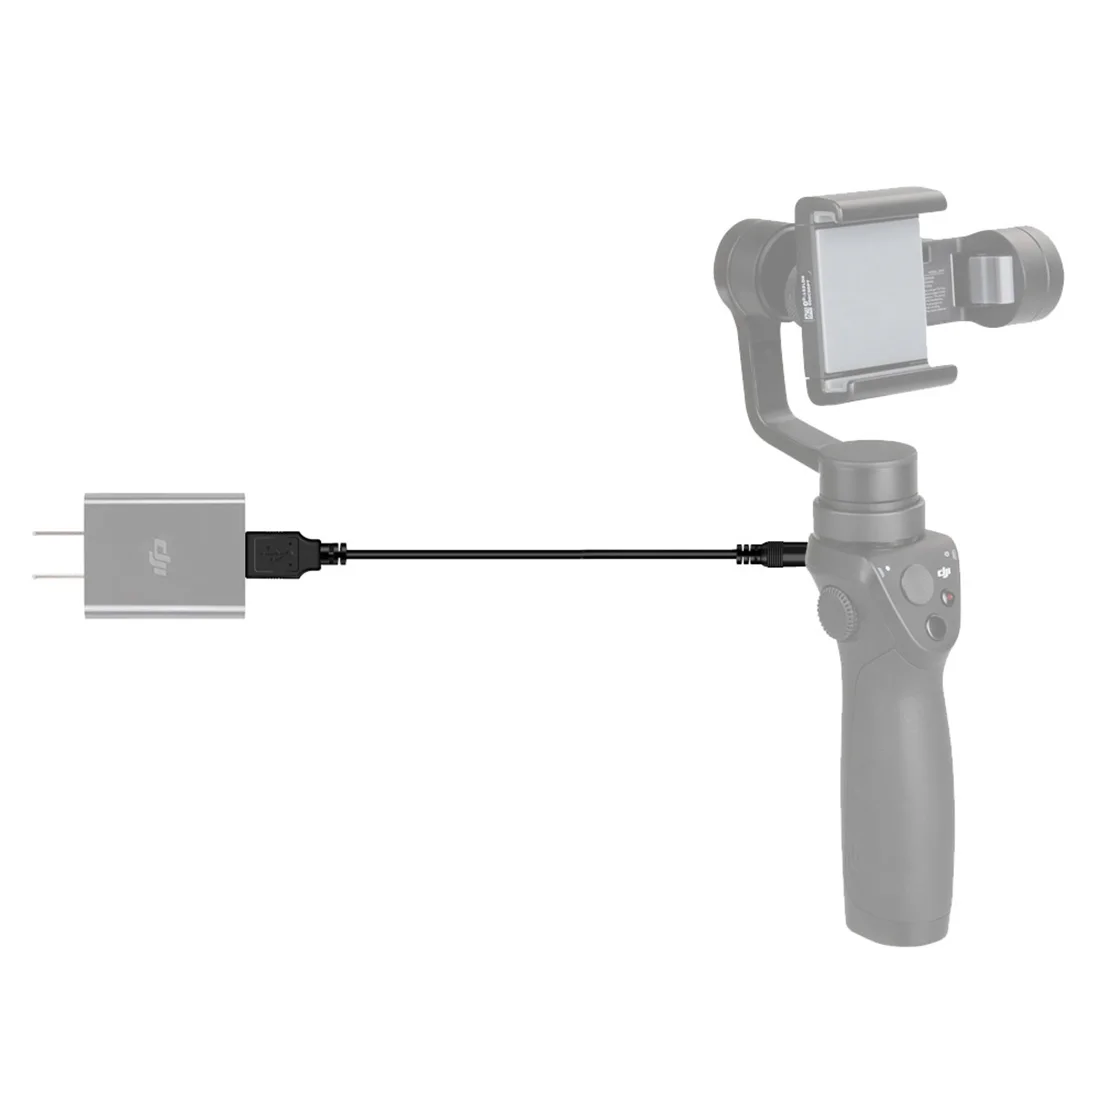 HOBBYINRC USB кабель зарядное устройство для DJI Osmo мобильный карданный стабилизатор Шнур зарядное устройство линия провода веревка